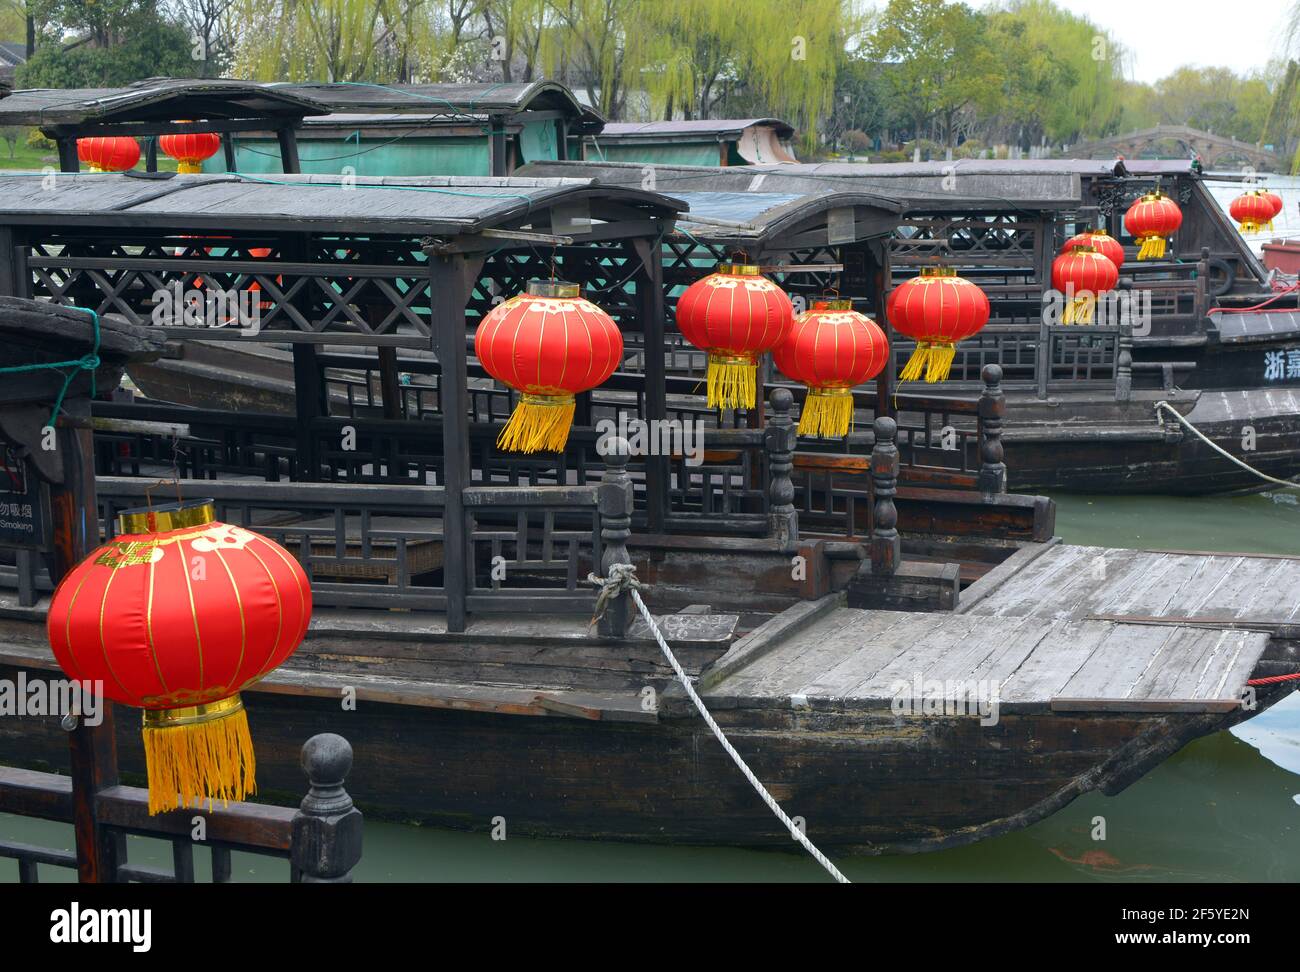 Linternas rojas brillantes adornan los barcos turísticos en el lago sur de Jiaxing o Nanhu. El famoso lago donde el partido comunista chino se reunió por primera vez en 1921. Foto de stock